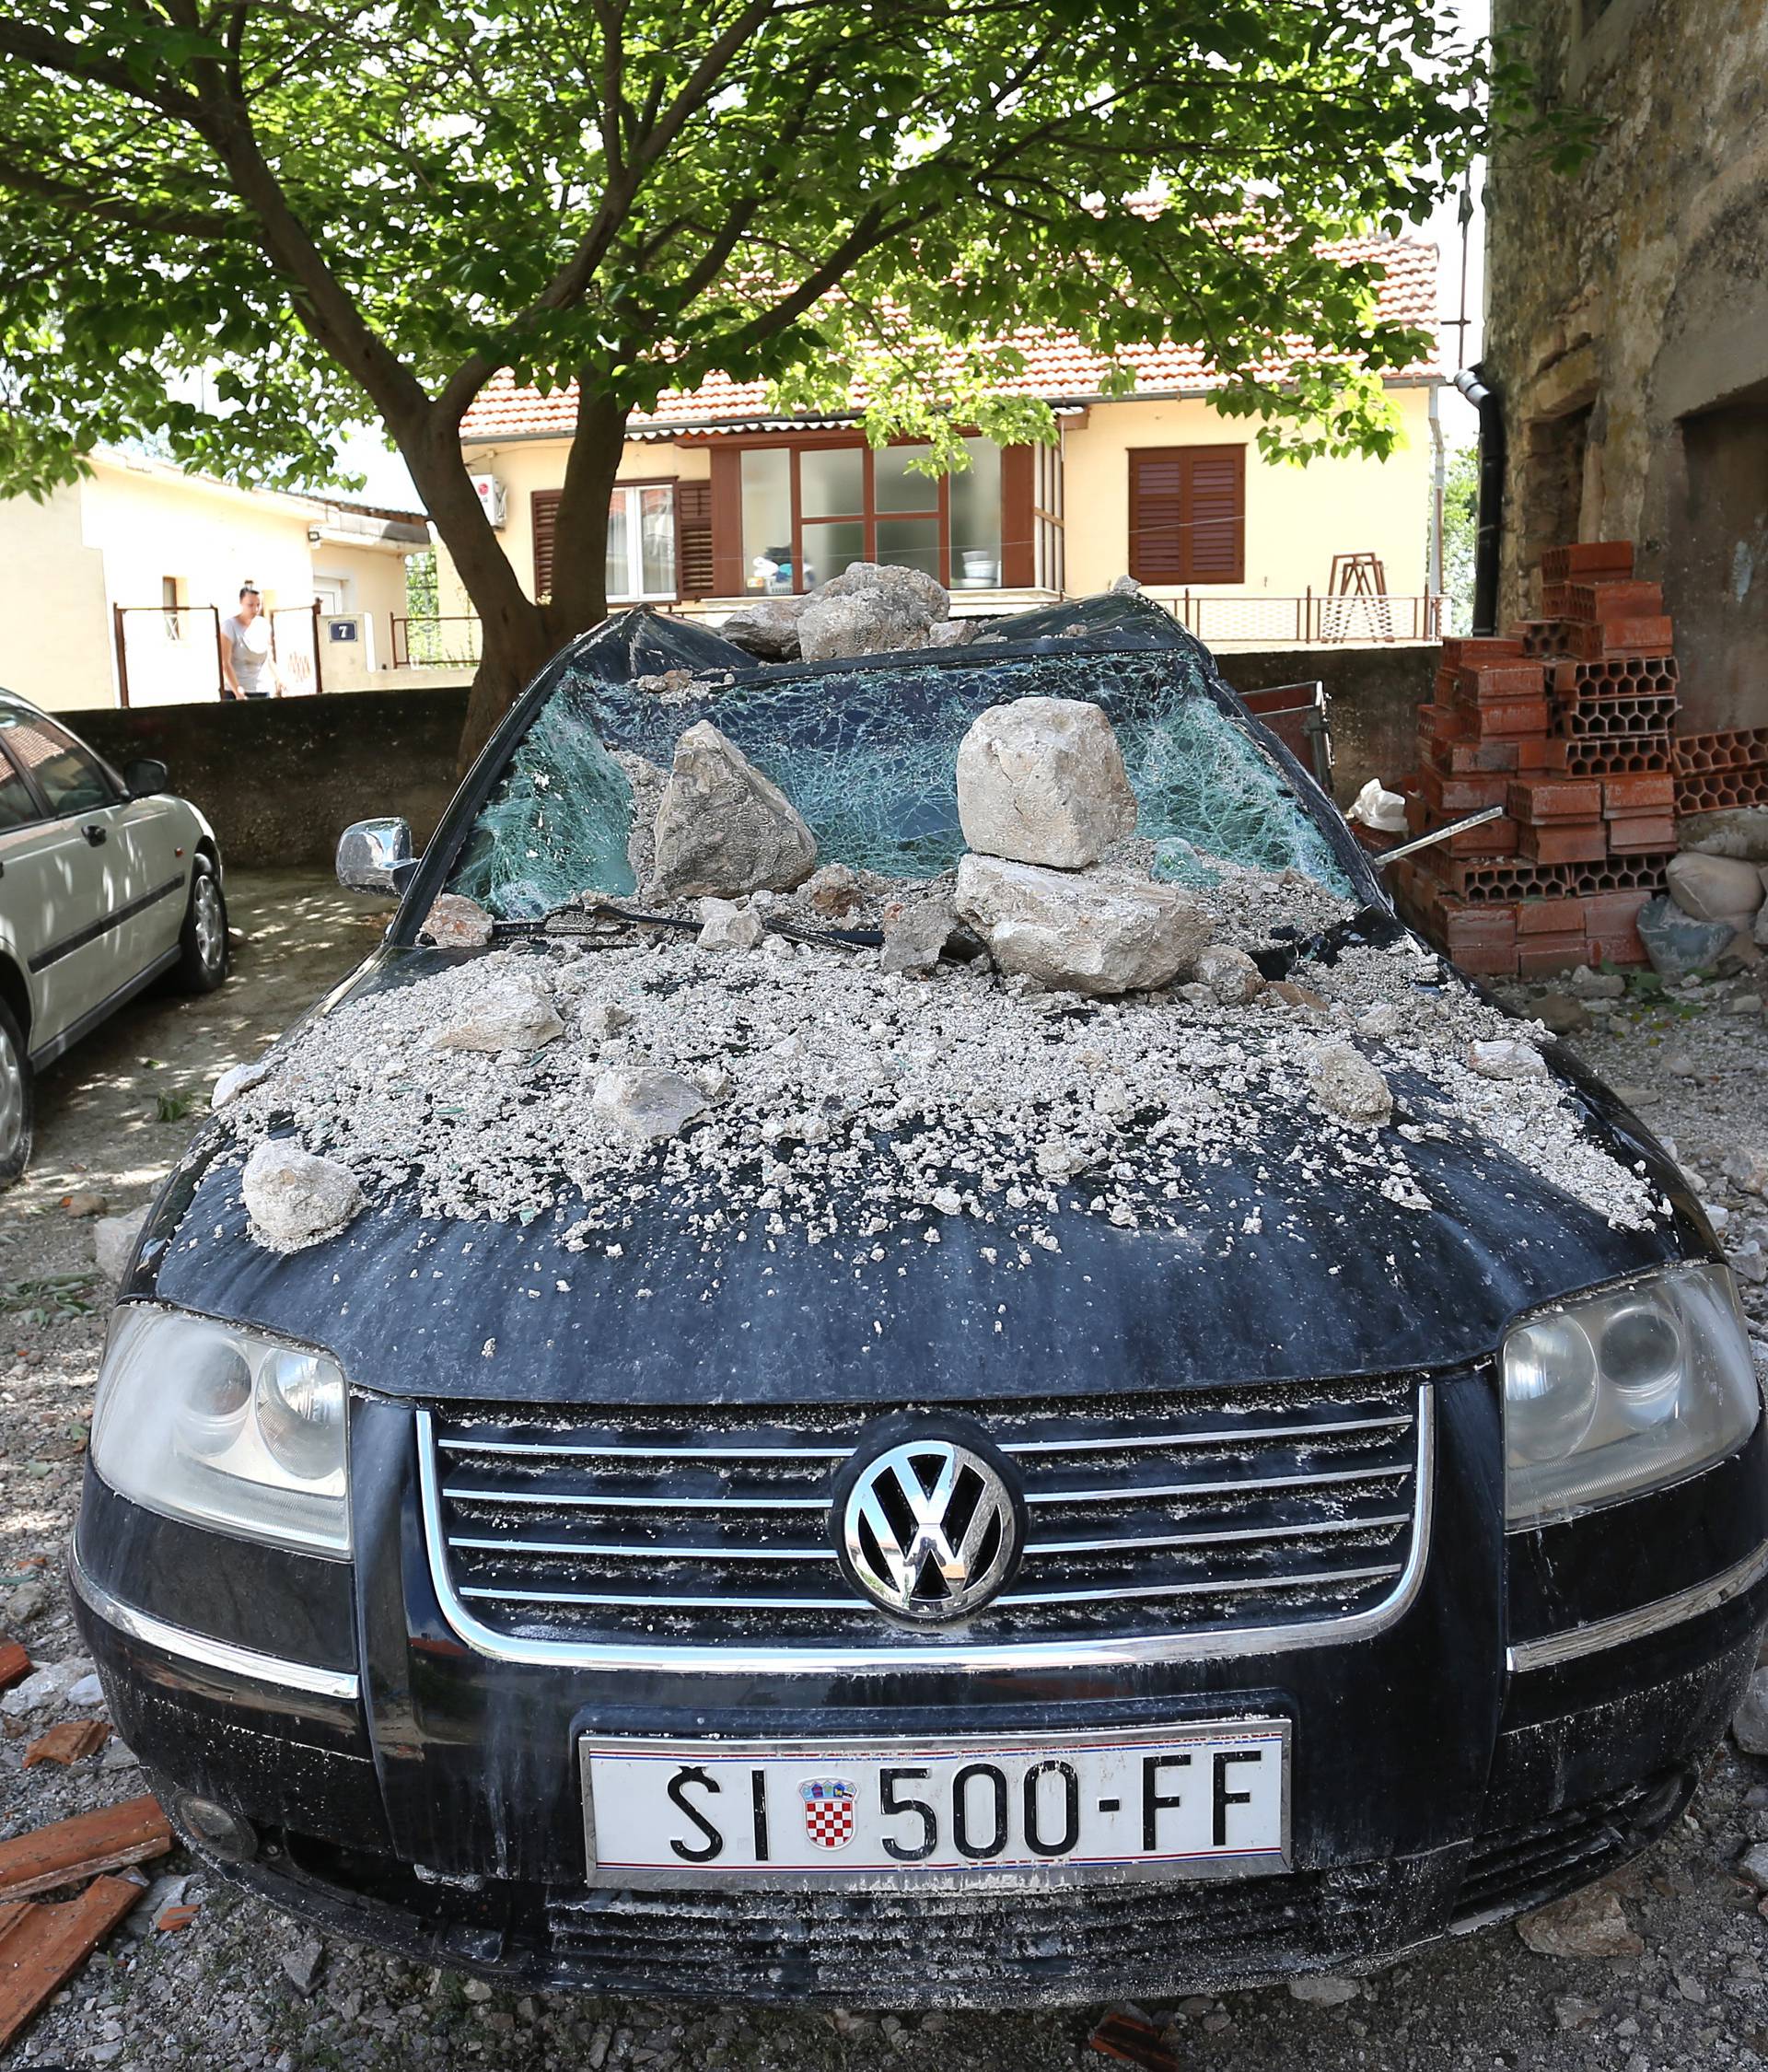 U kuću u Drnišu udario grom: 'Mislila sam da je pala granata'